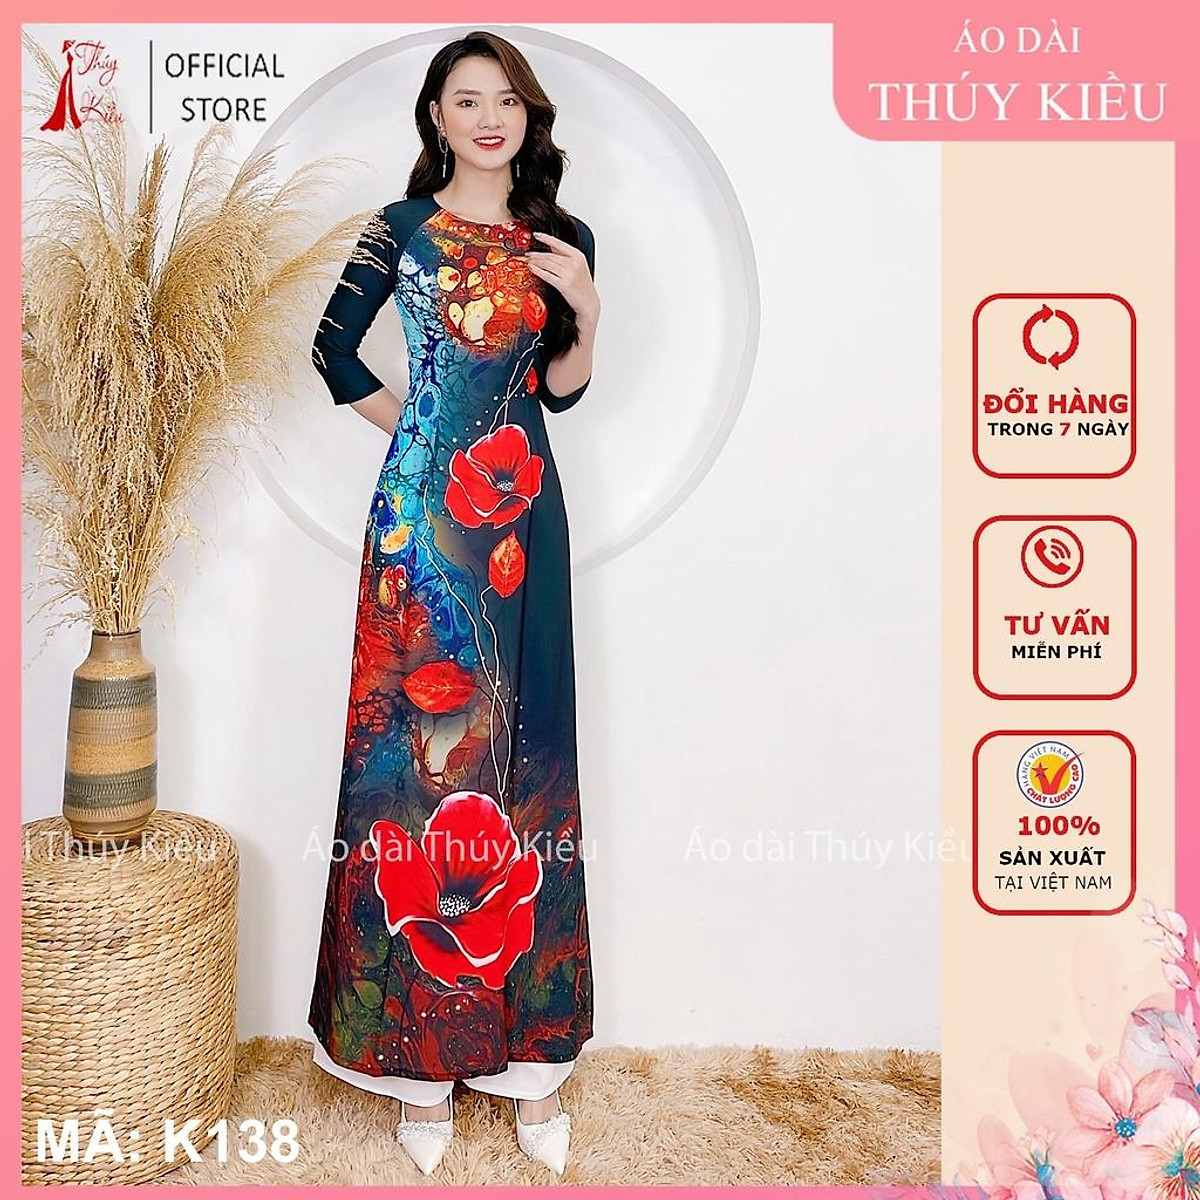 Áo dài nữ may sẵn thiết kế nền hoa đỏ đẹp cách tân tết K138 Thúy